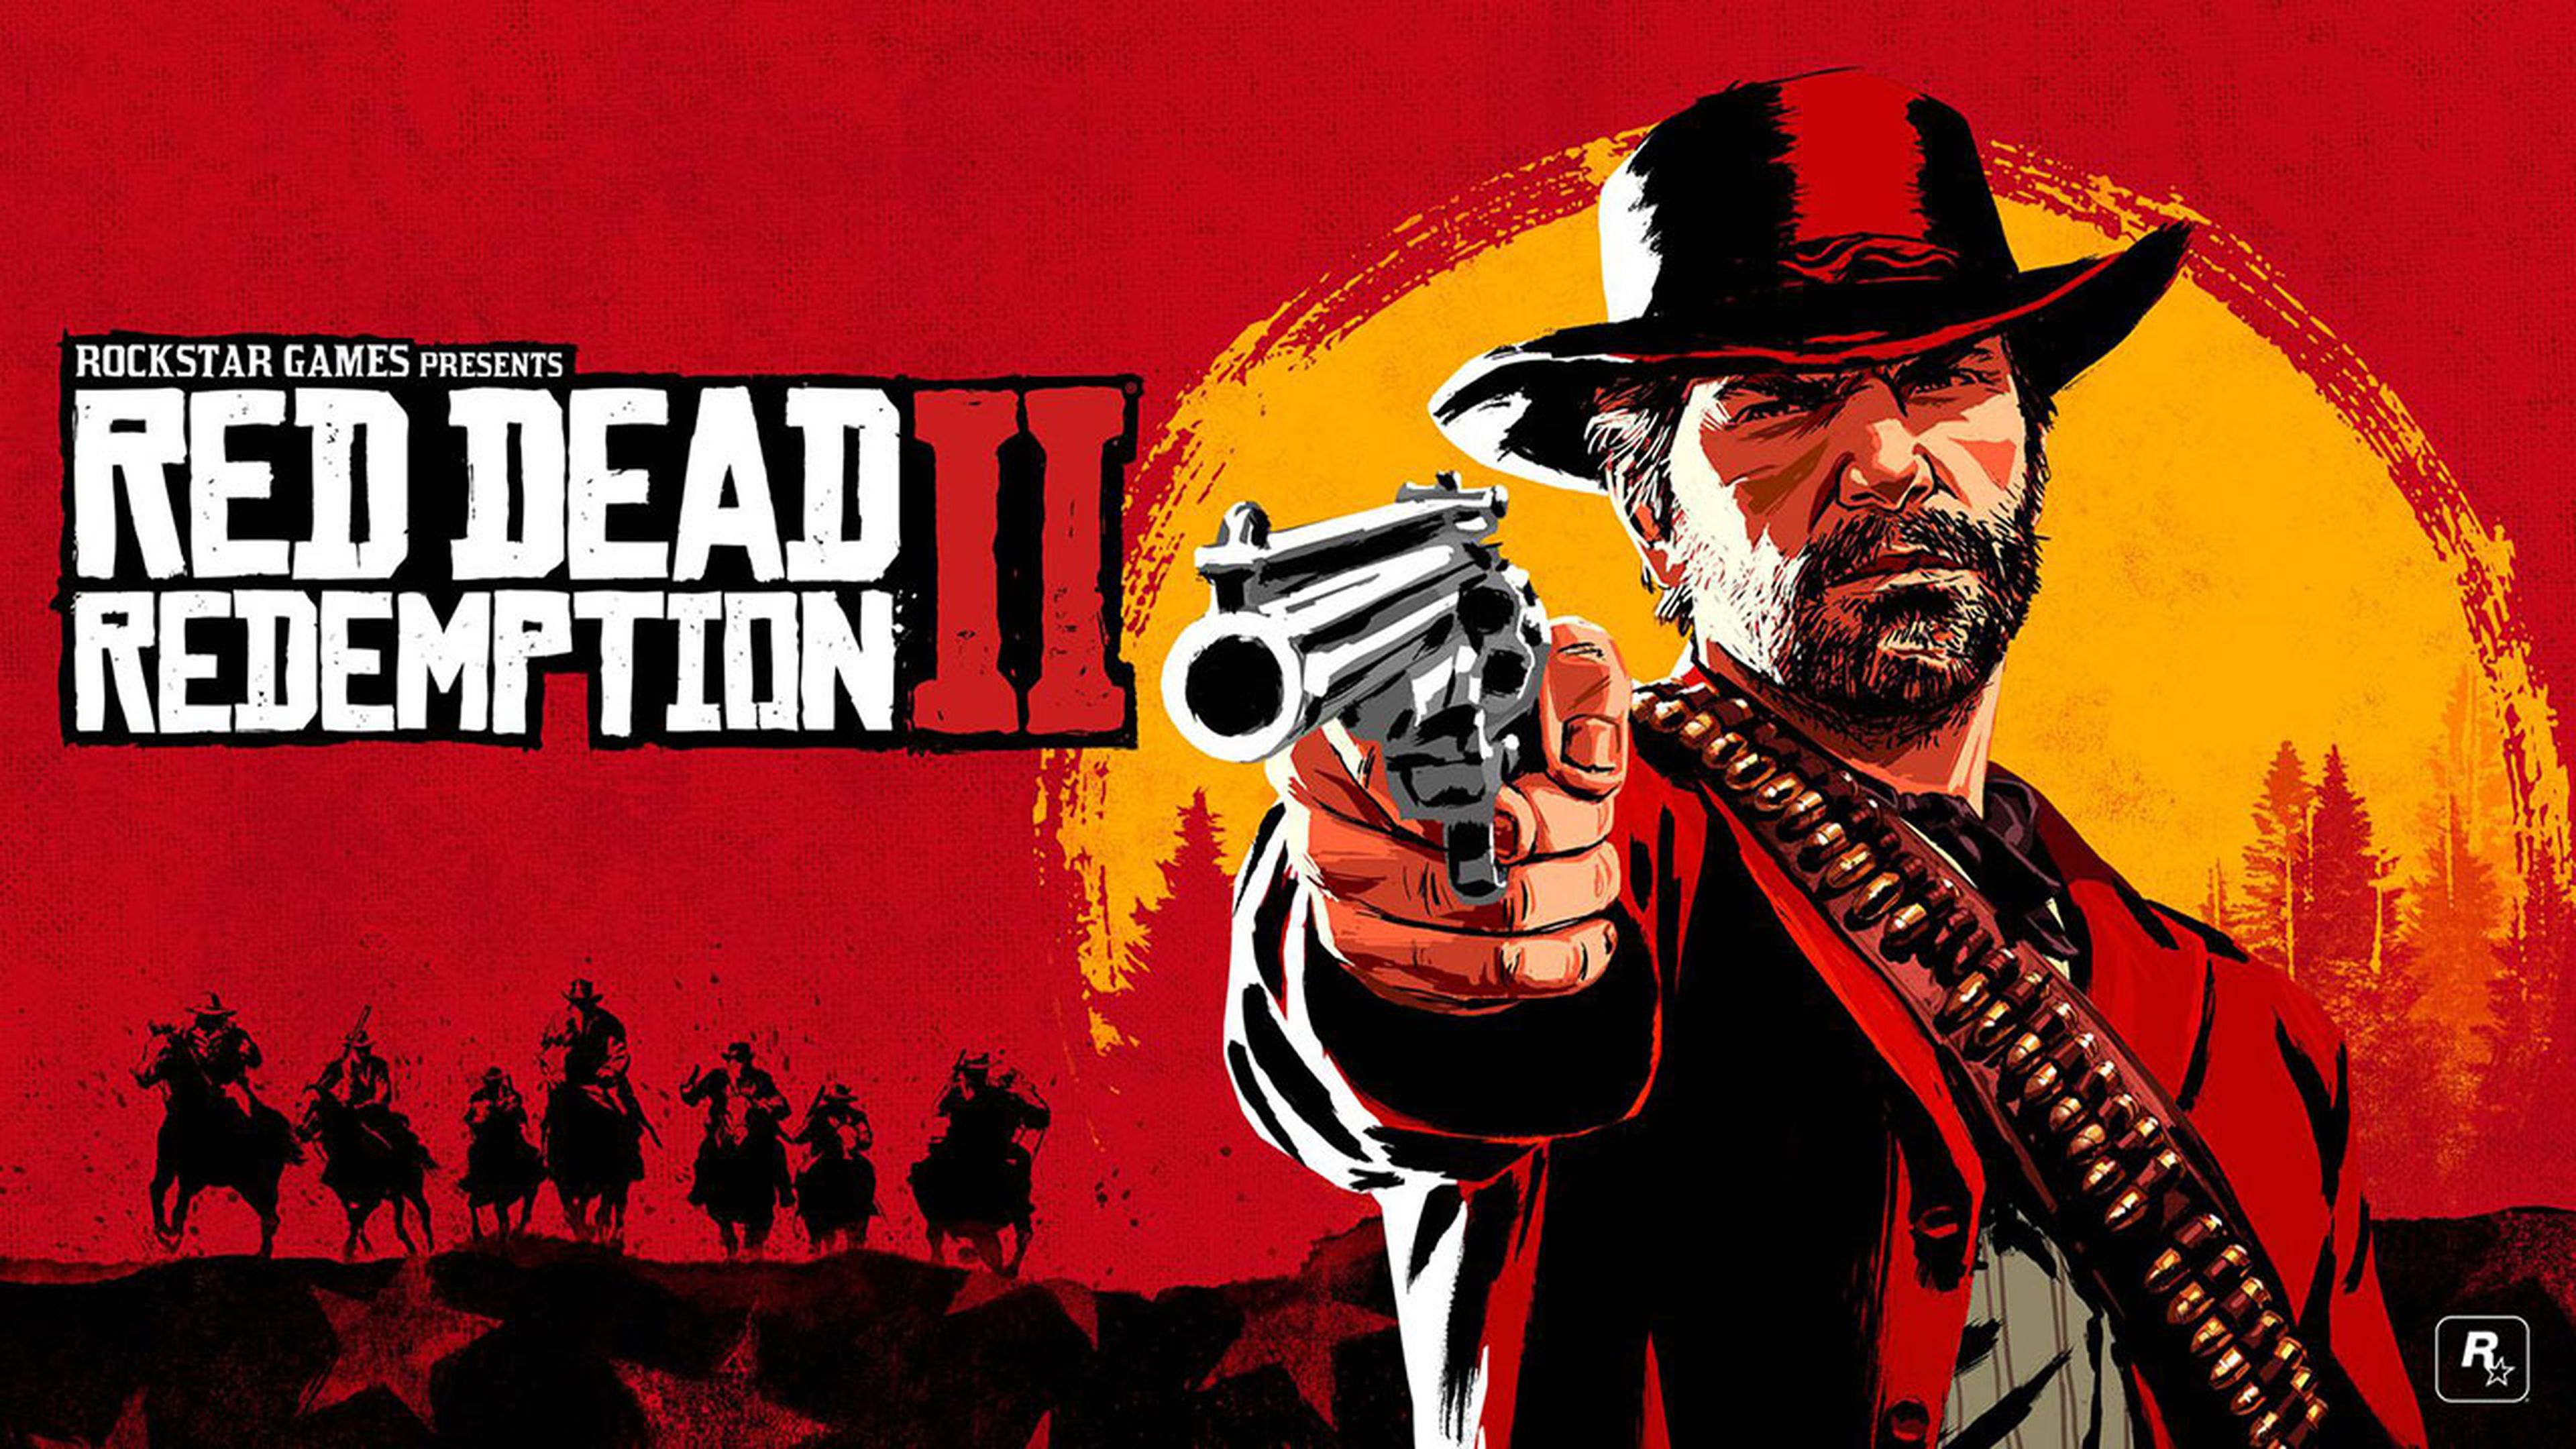 Red Dead Redemption 2: Guía del Tesoro de Le Trésor des Morts